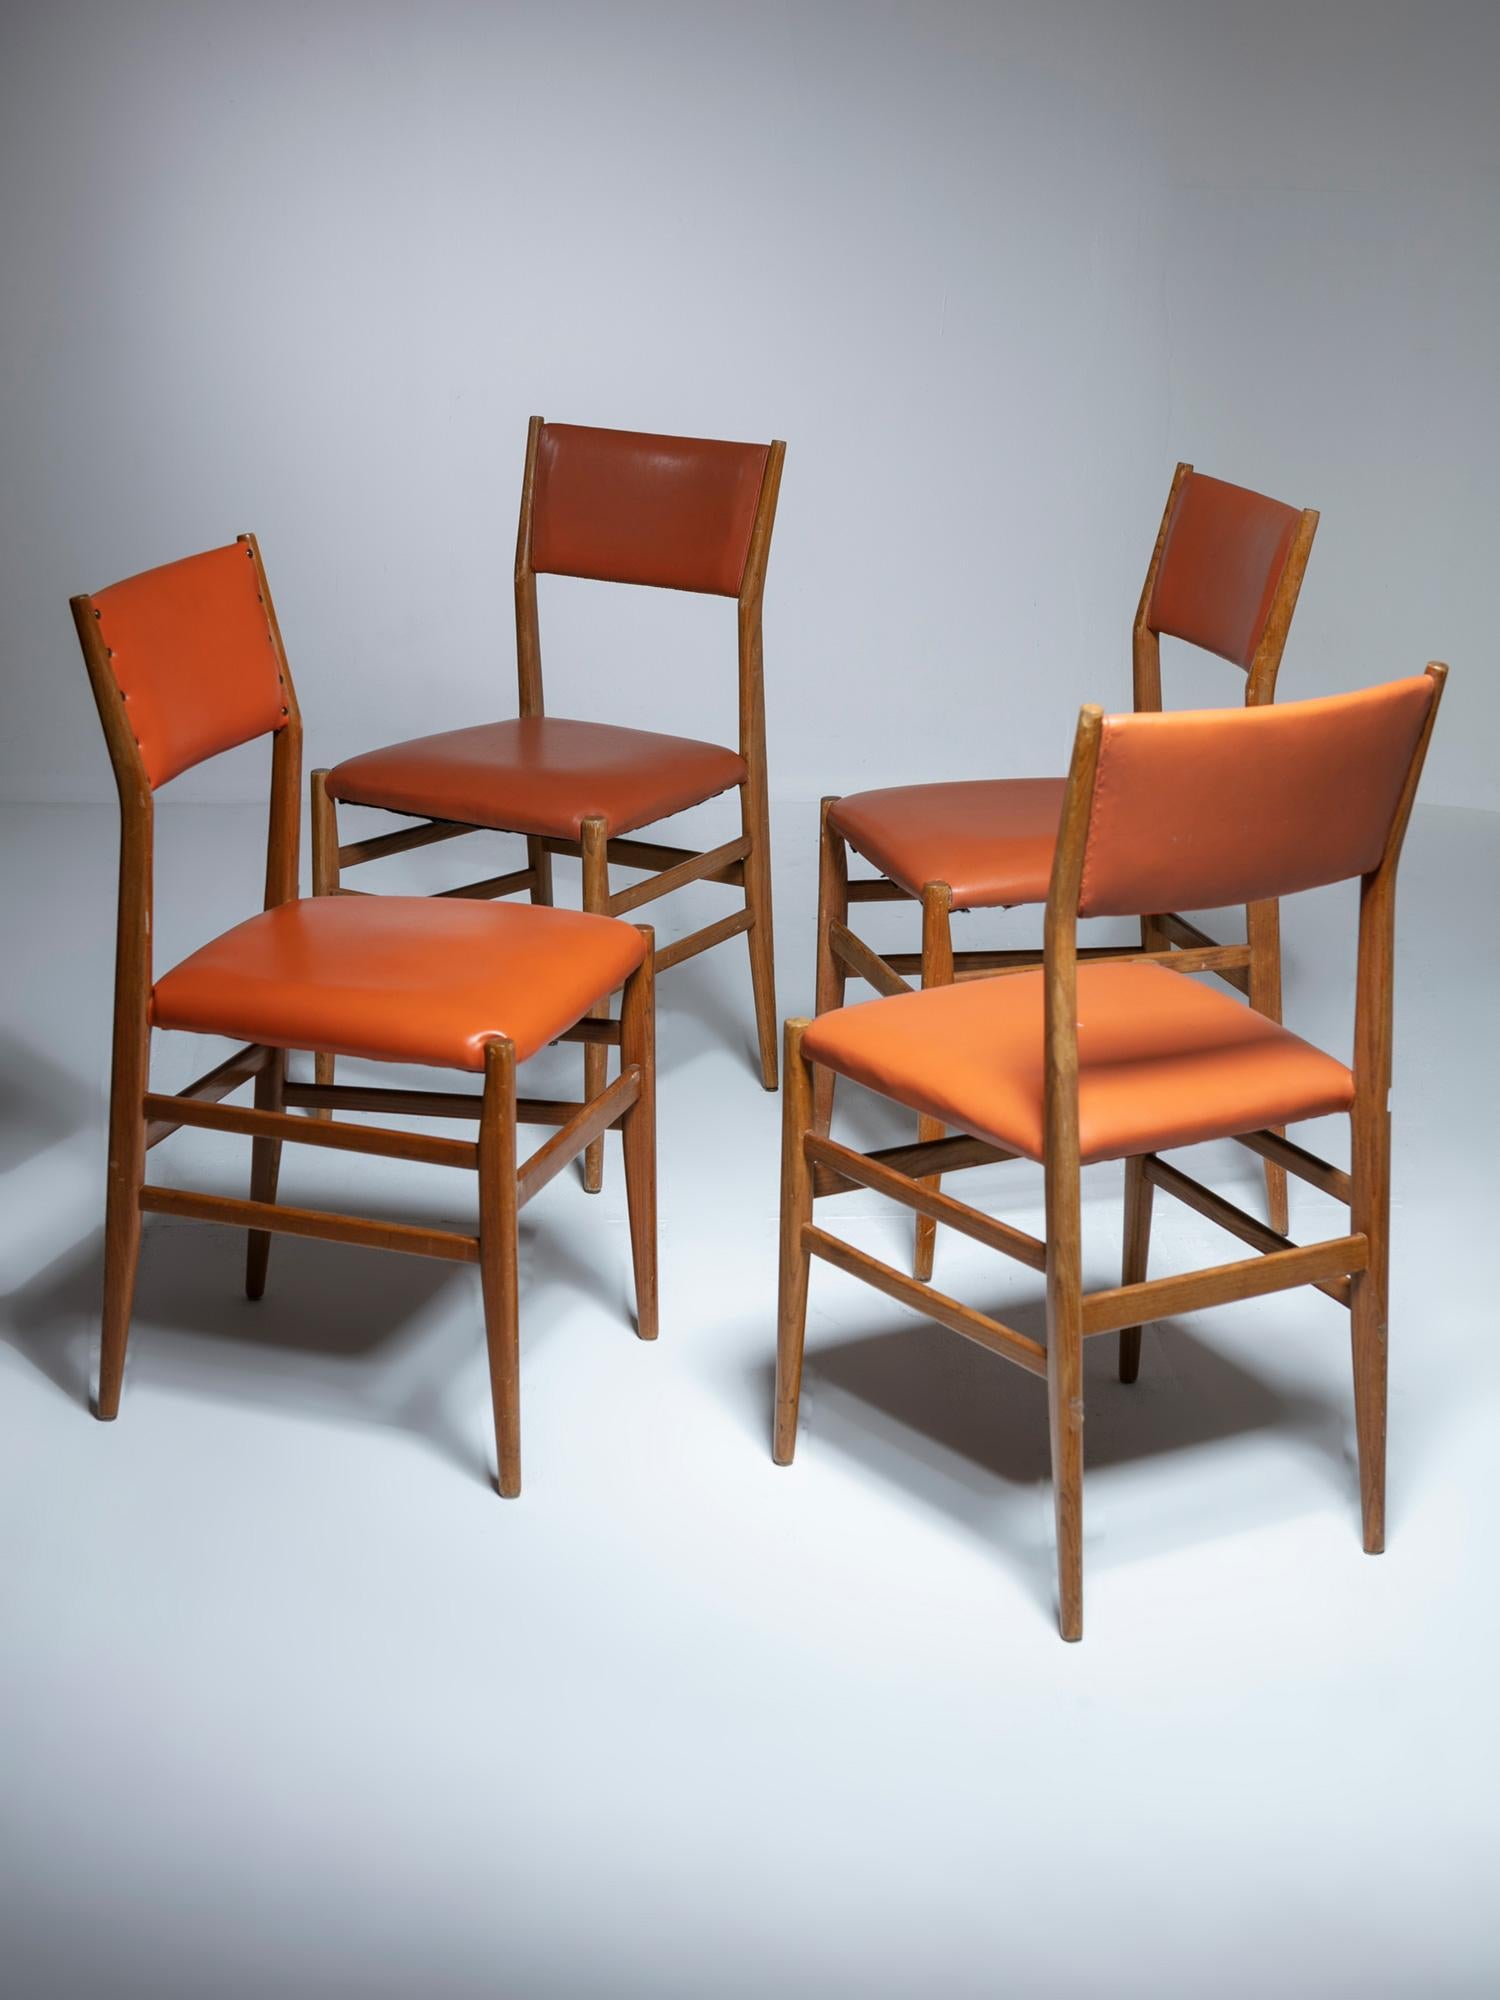 Vier Stühle Modell 646 von Gio Ponti für Cassina.
Seltene Ausführung mit gepolsterter Rückenlehne.
Das Set besteht aus drei Stühlen in der gleichen Farbe und einem vierten in einer anderen Farbe.